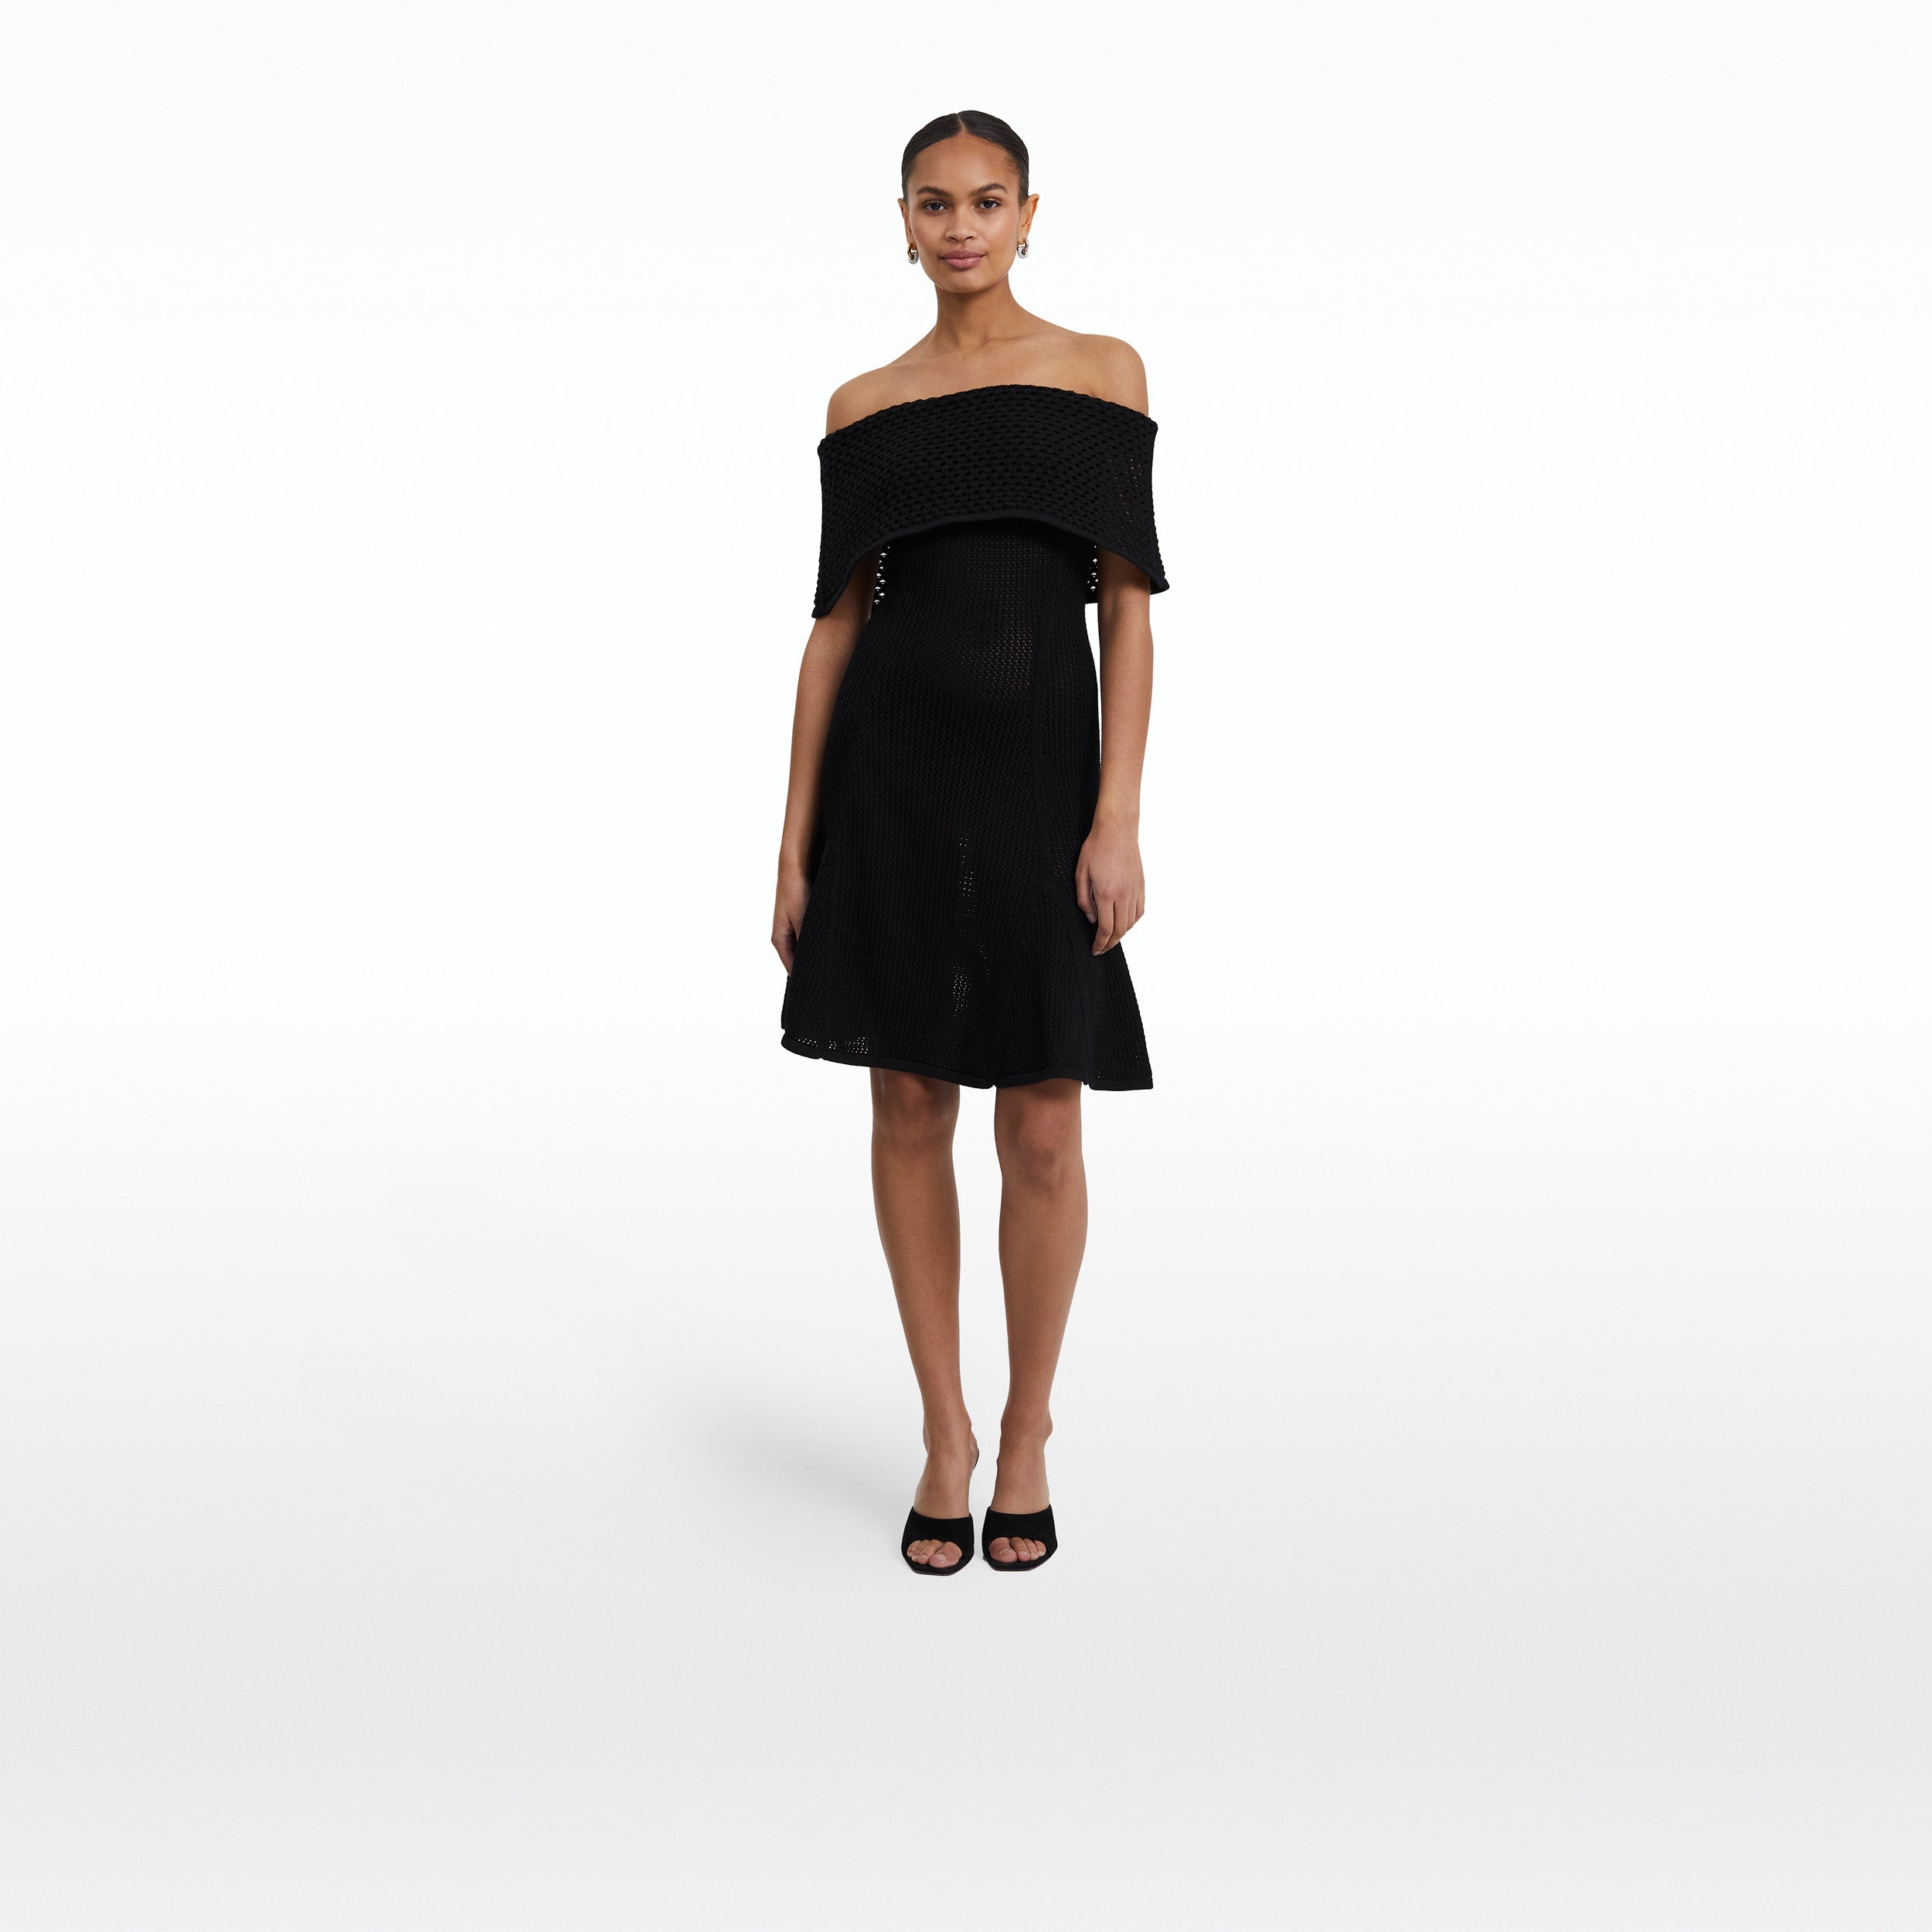 Kole Black Knit Short Dress